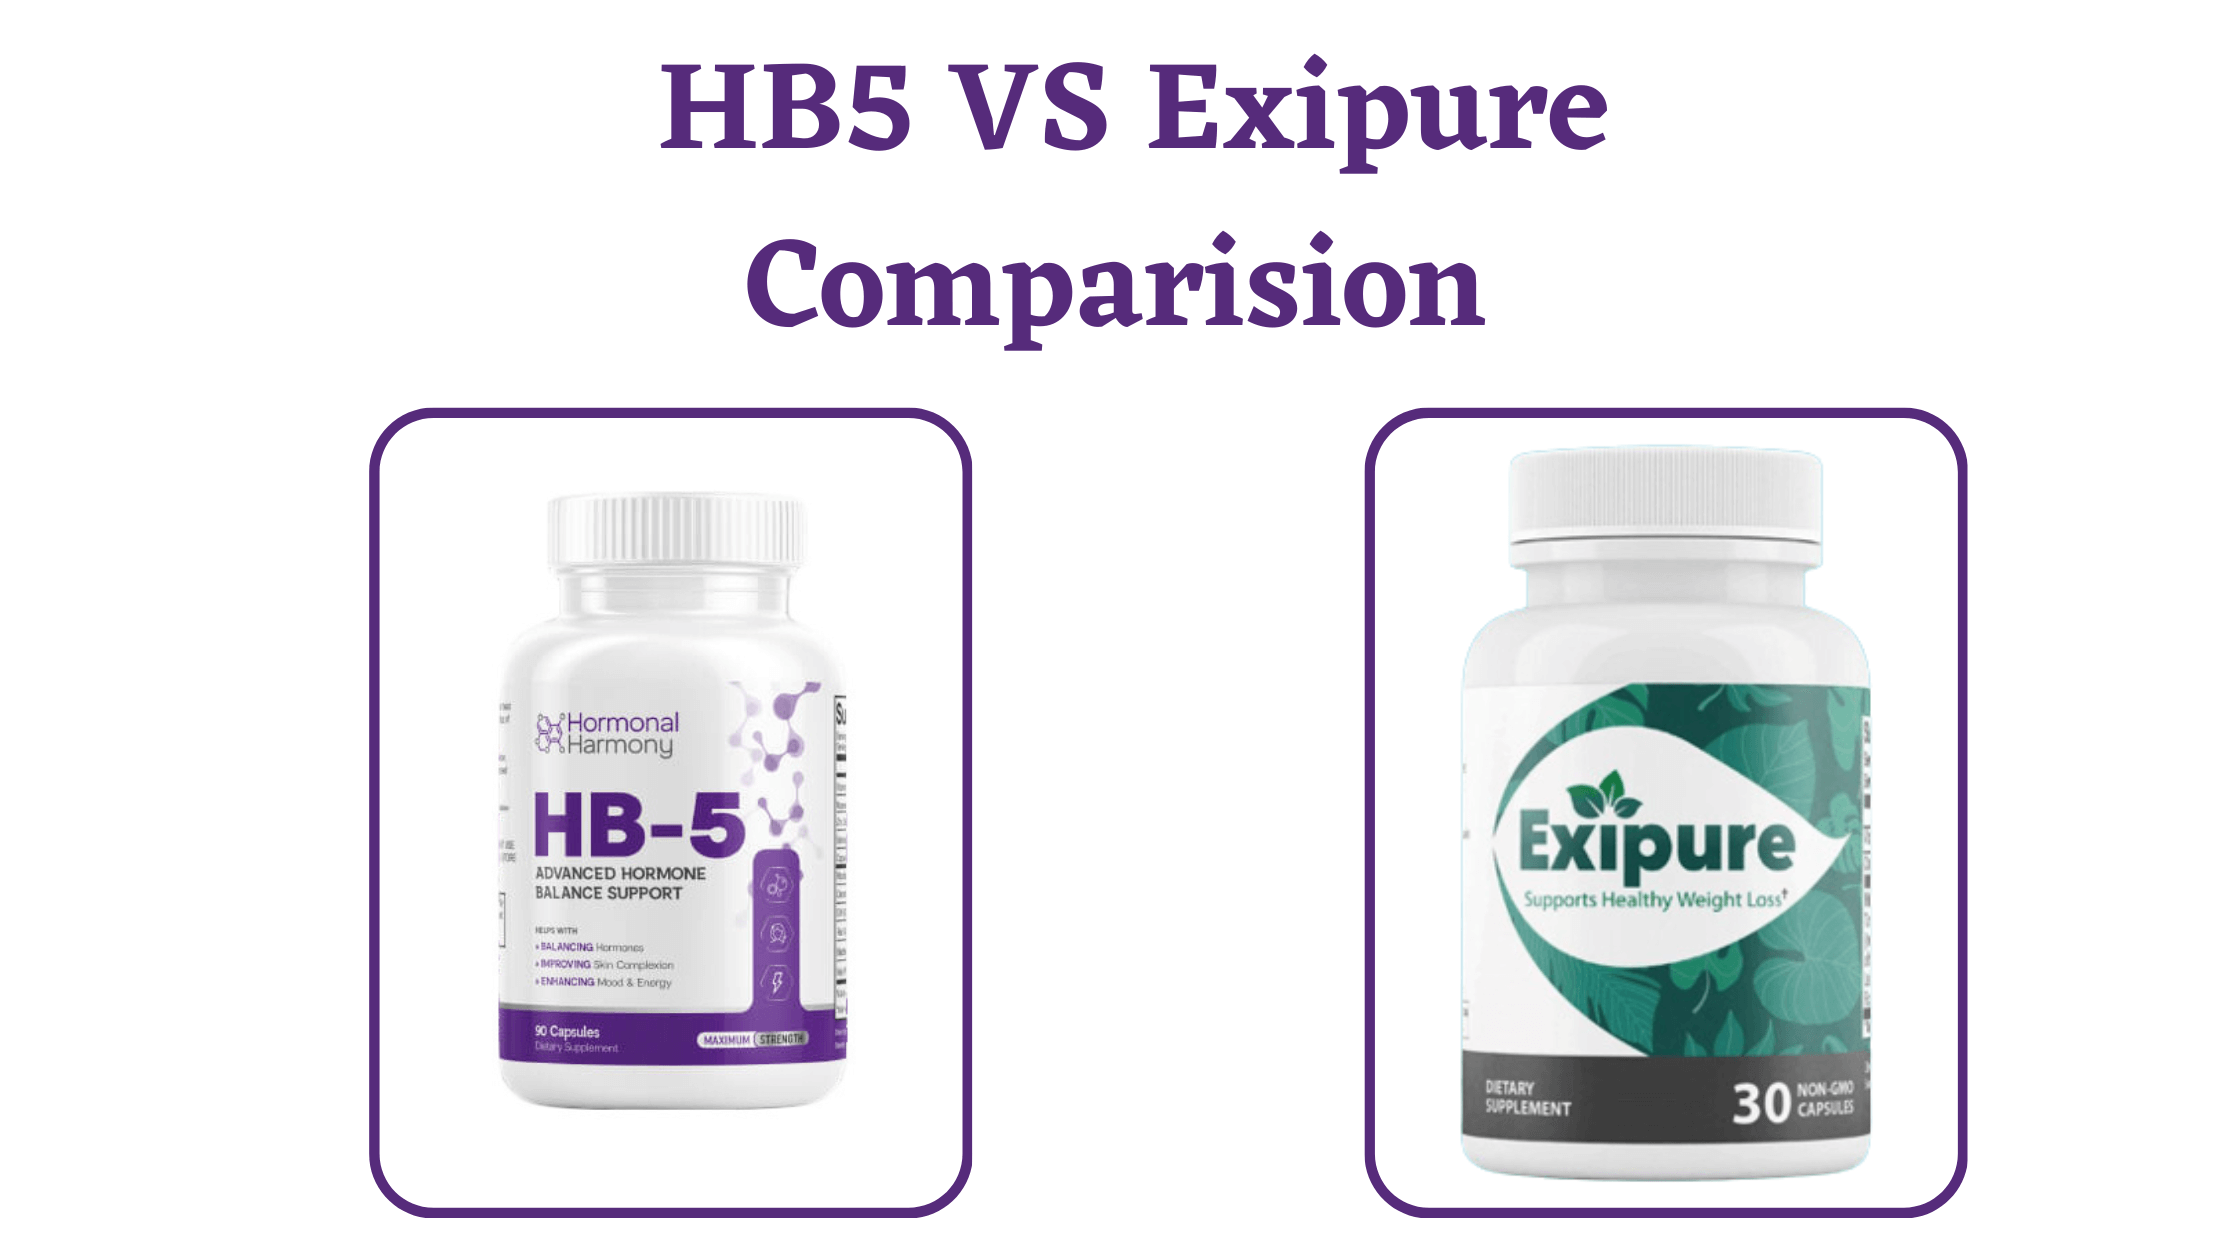 HB5 vs Exipure Comparision